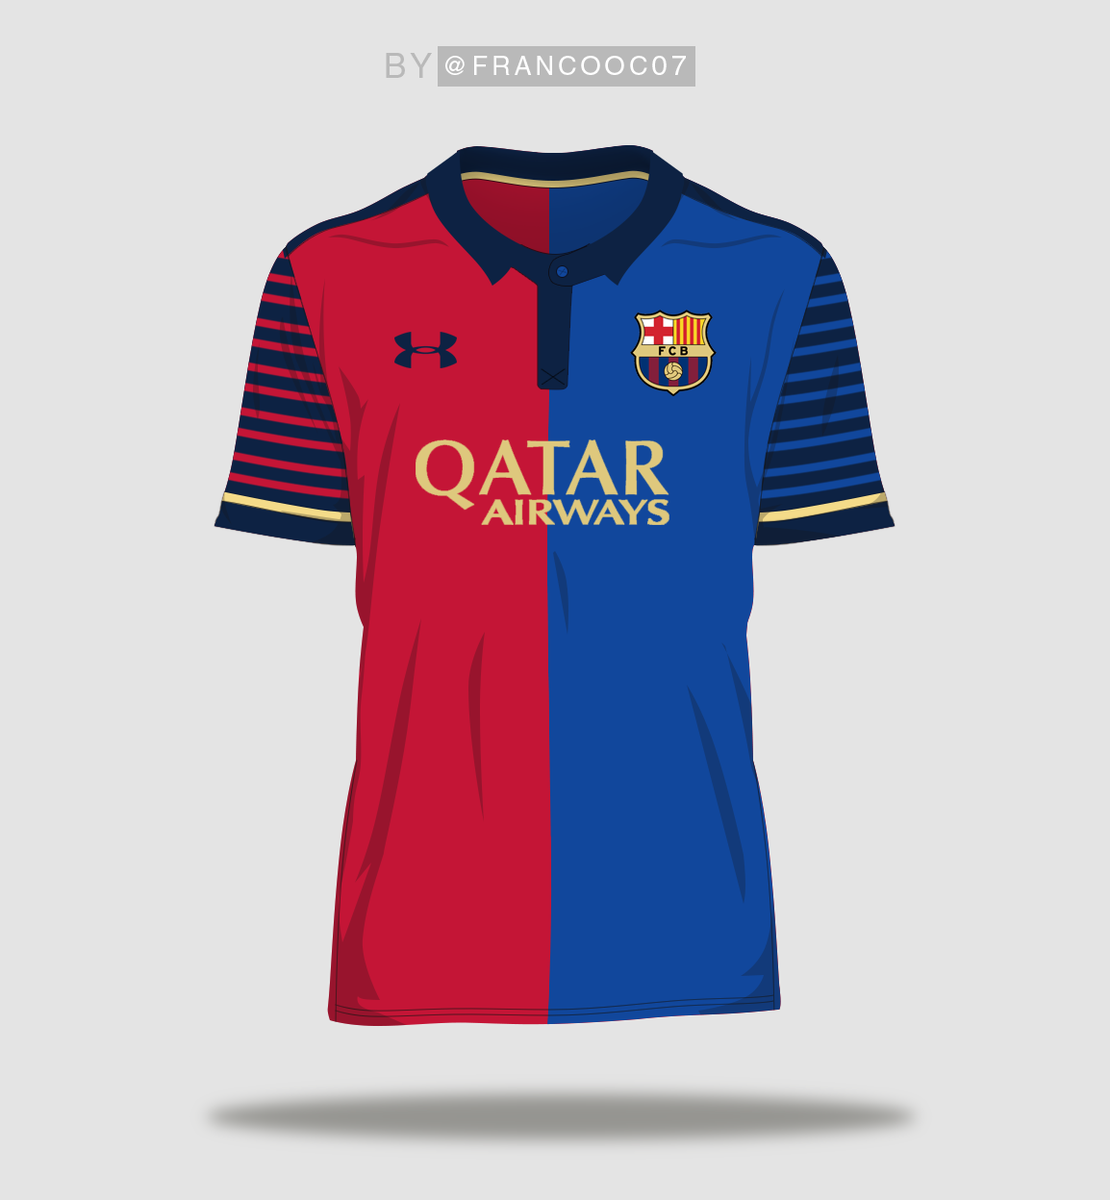 Franco on Twitter: "Barcelona - Home Kit #FCB #Barça #UnderArmour #Messi https://t.co/Wyjb8bcKzI" Twitter